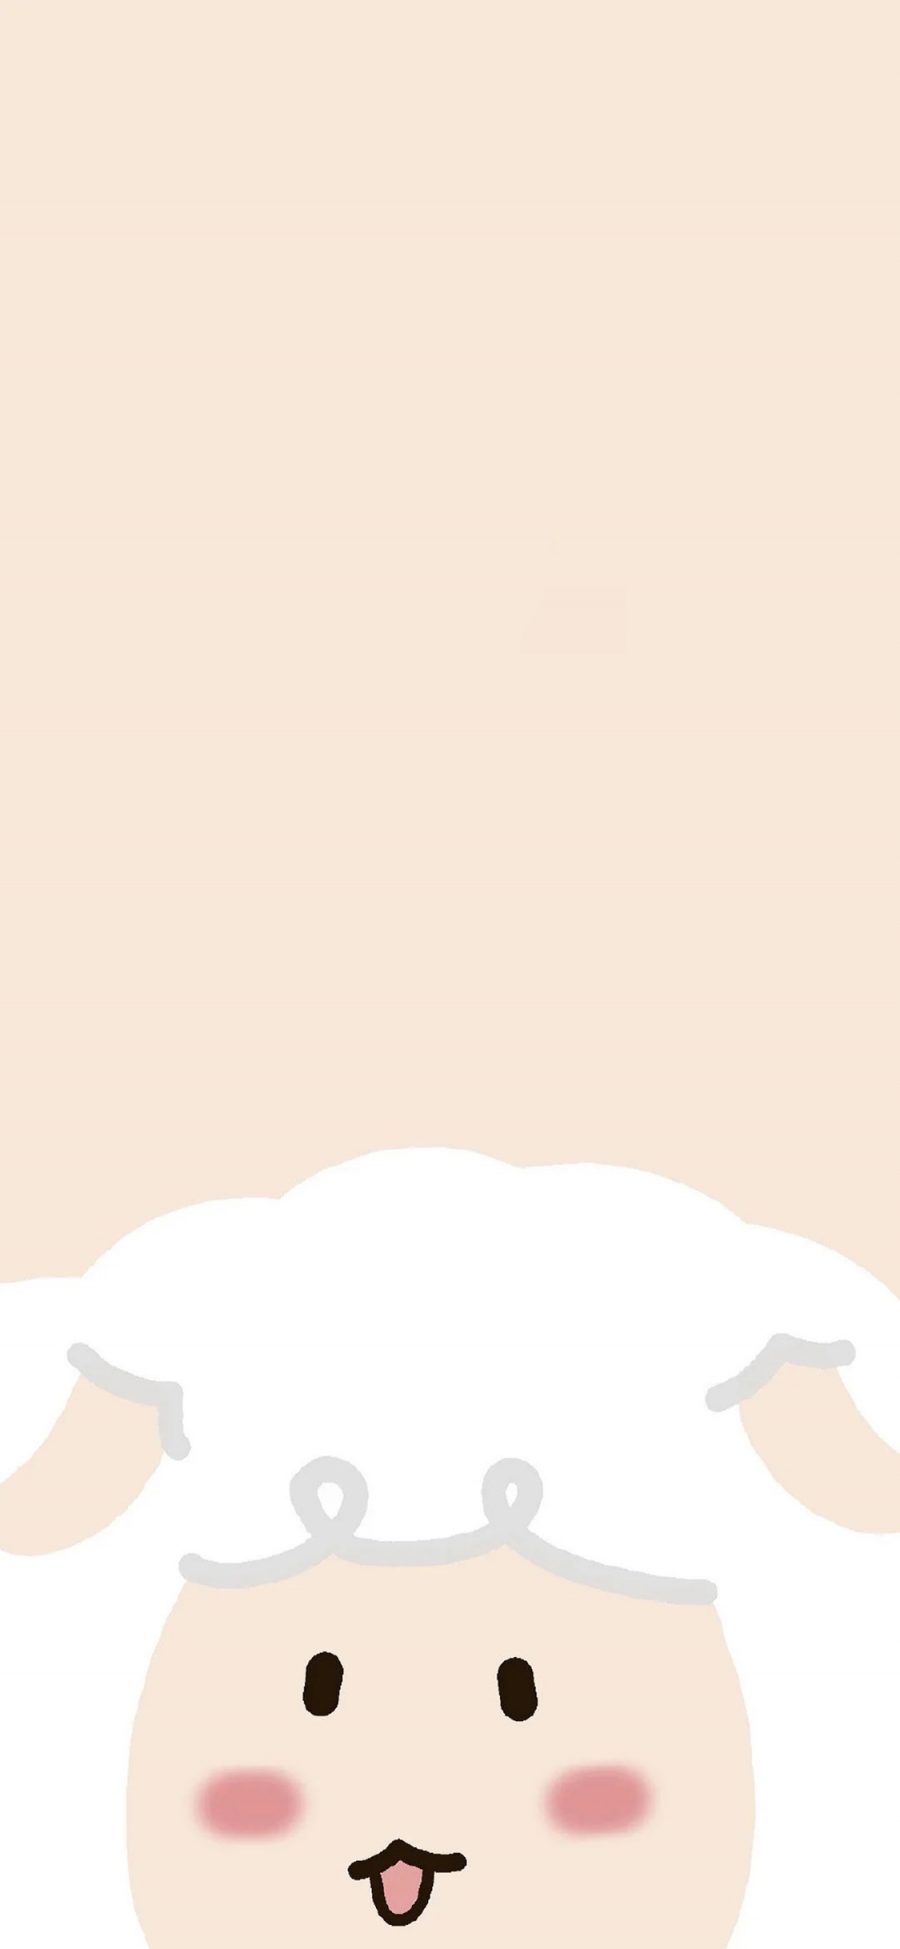 [2436×1125]羊 十二生肖 吐舌 可爱 苹果手机动漫壁纸图片